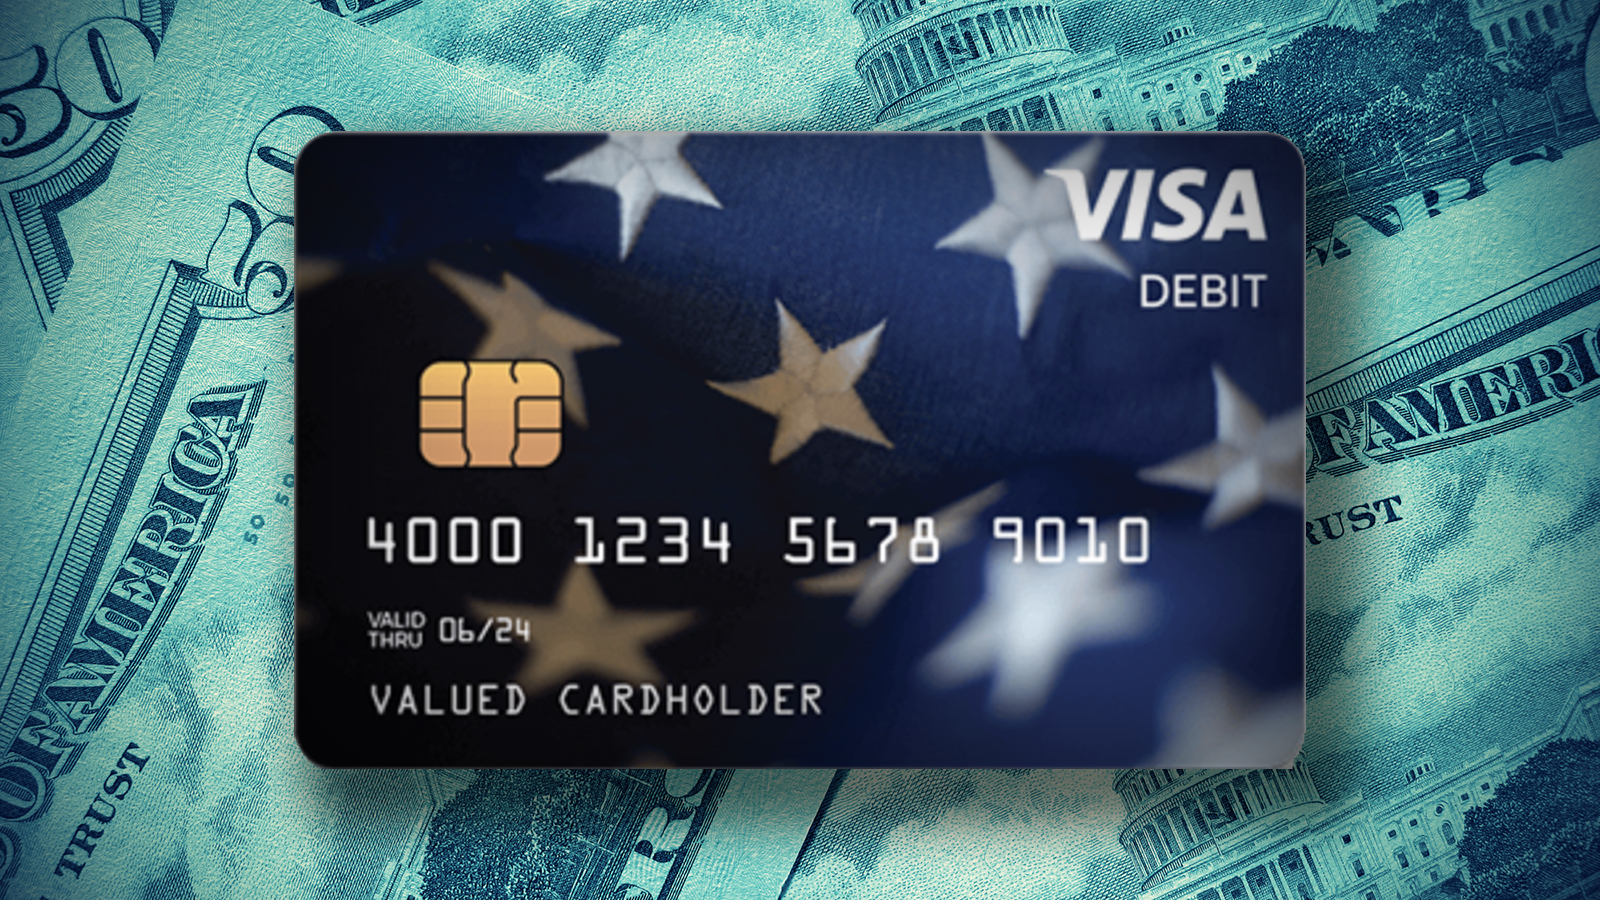 does turbotax debit card refund deposit